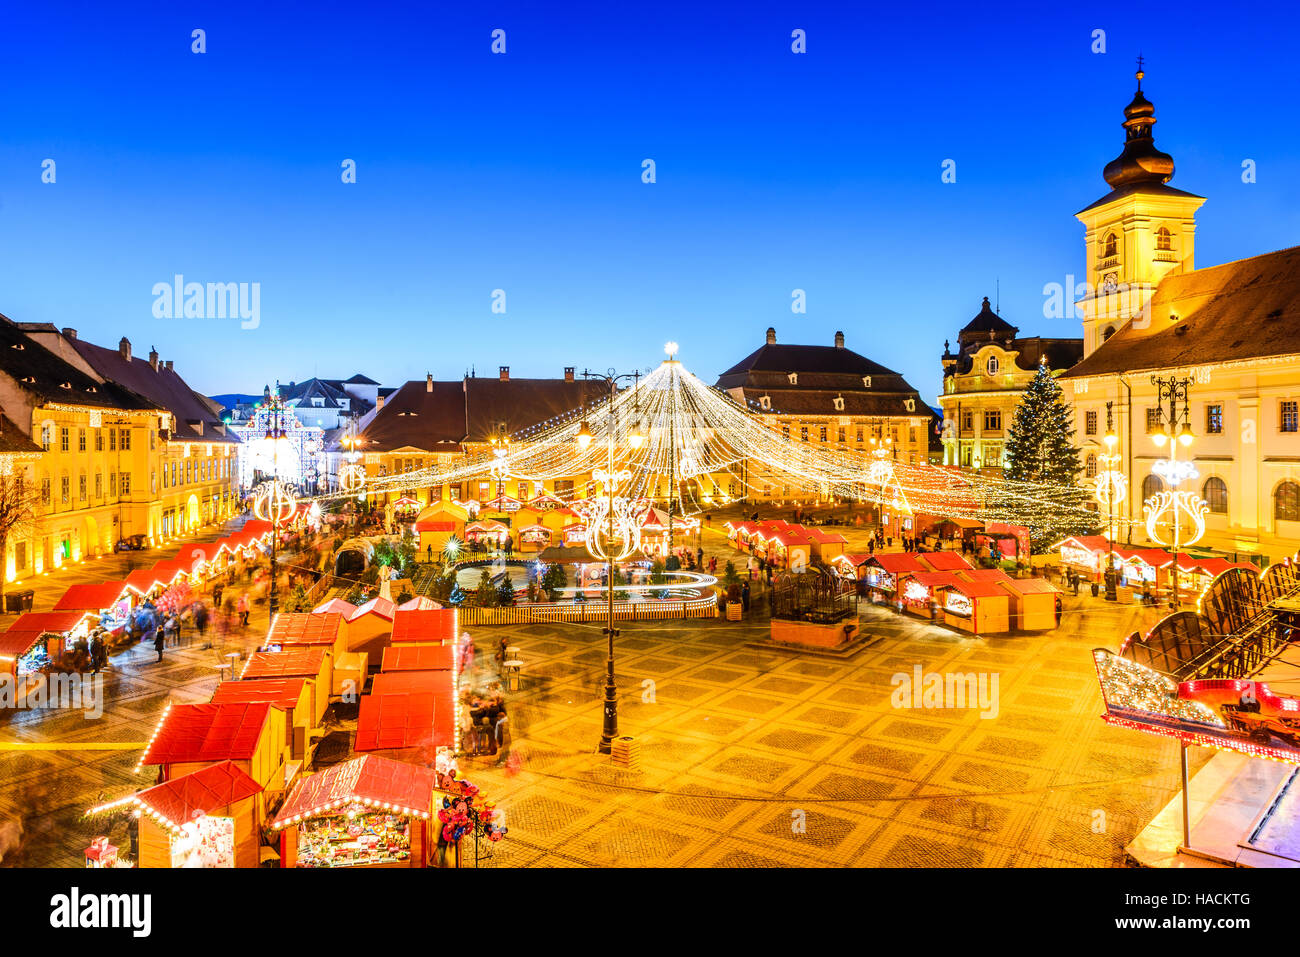 Sibiu, Rumänien. Nacht-Bild mit Touristen am Weihnachtsmarkt im großen Markt der mittelalterlichen Stadt Sibiu, Transylvania Wahrzeichen. Stockfoto